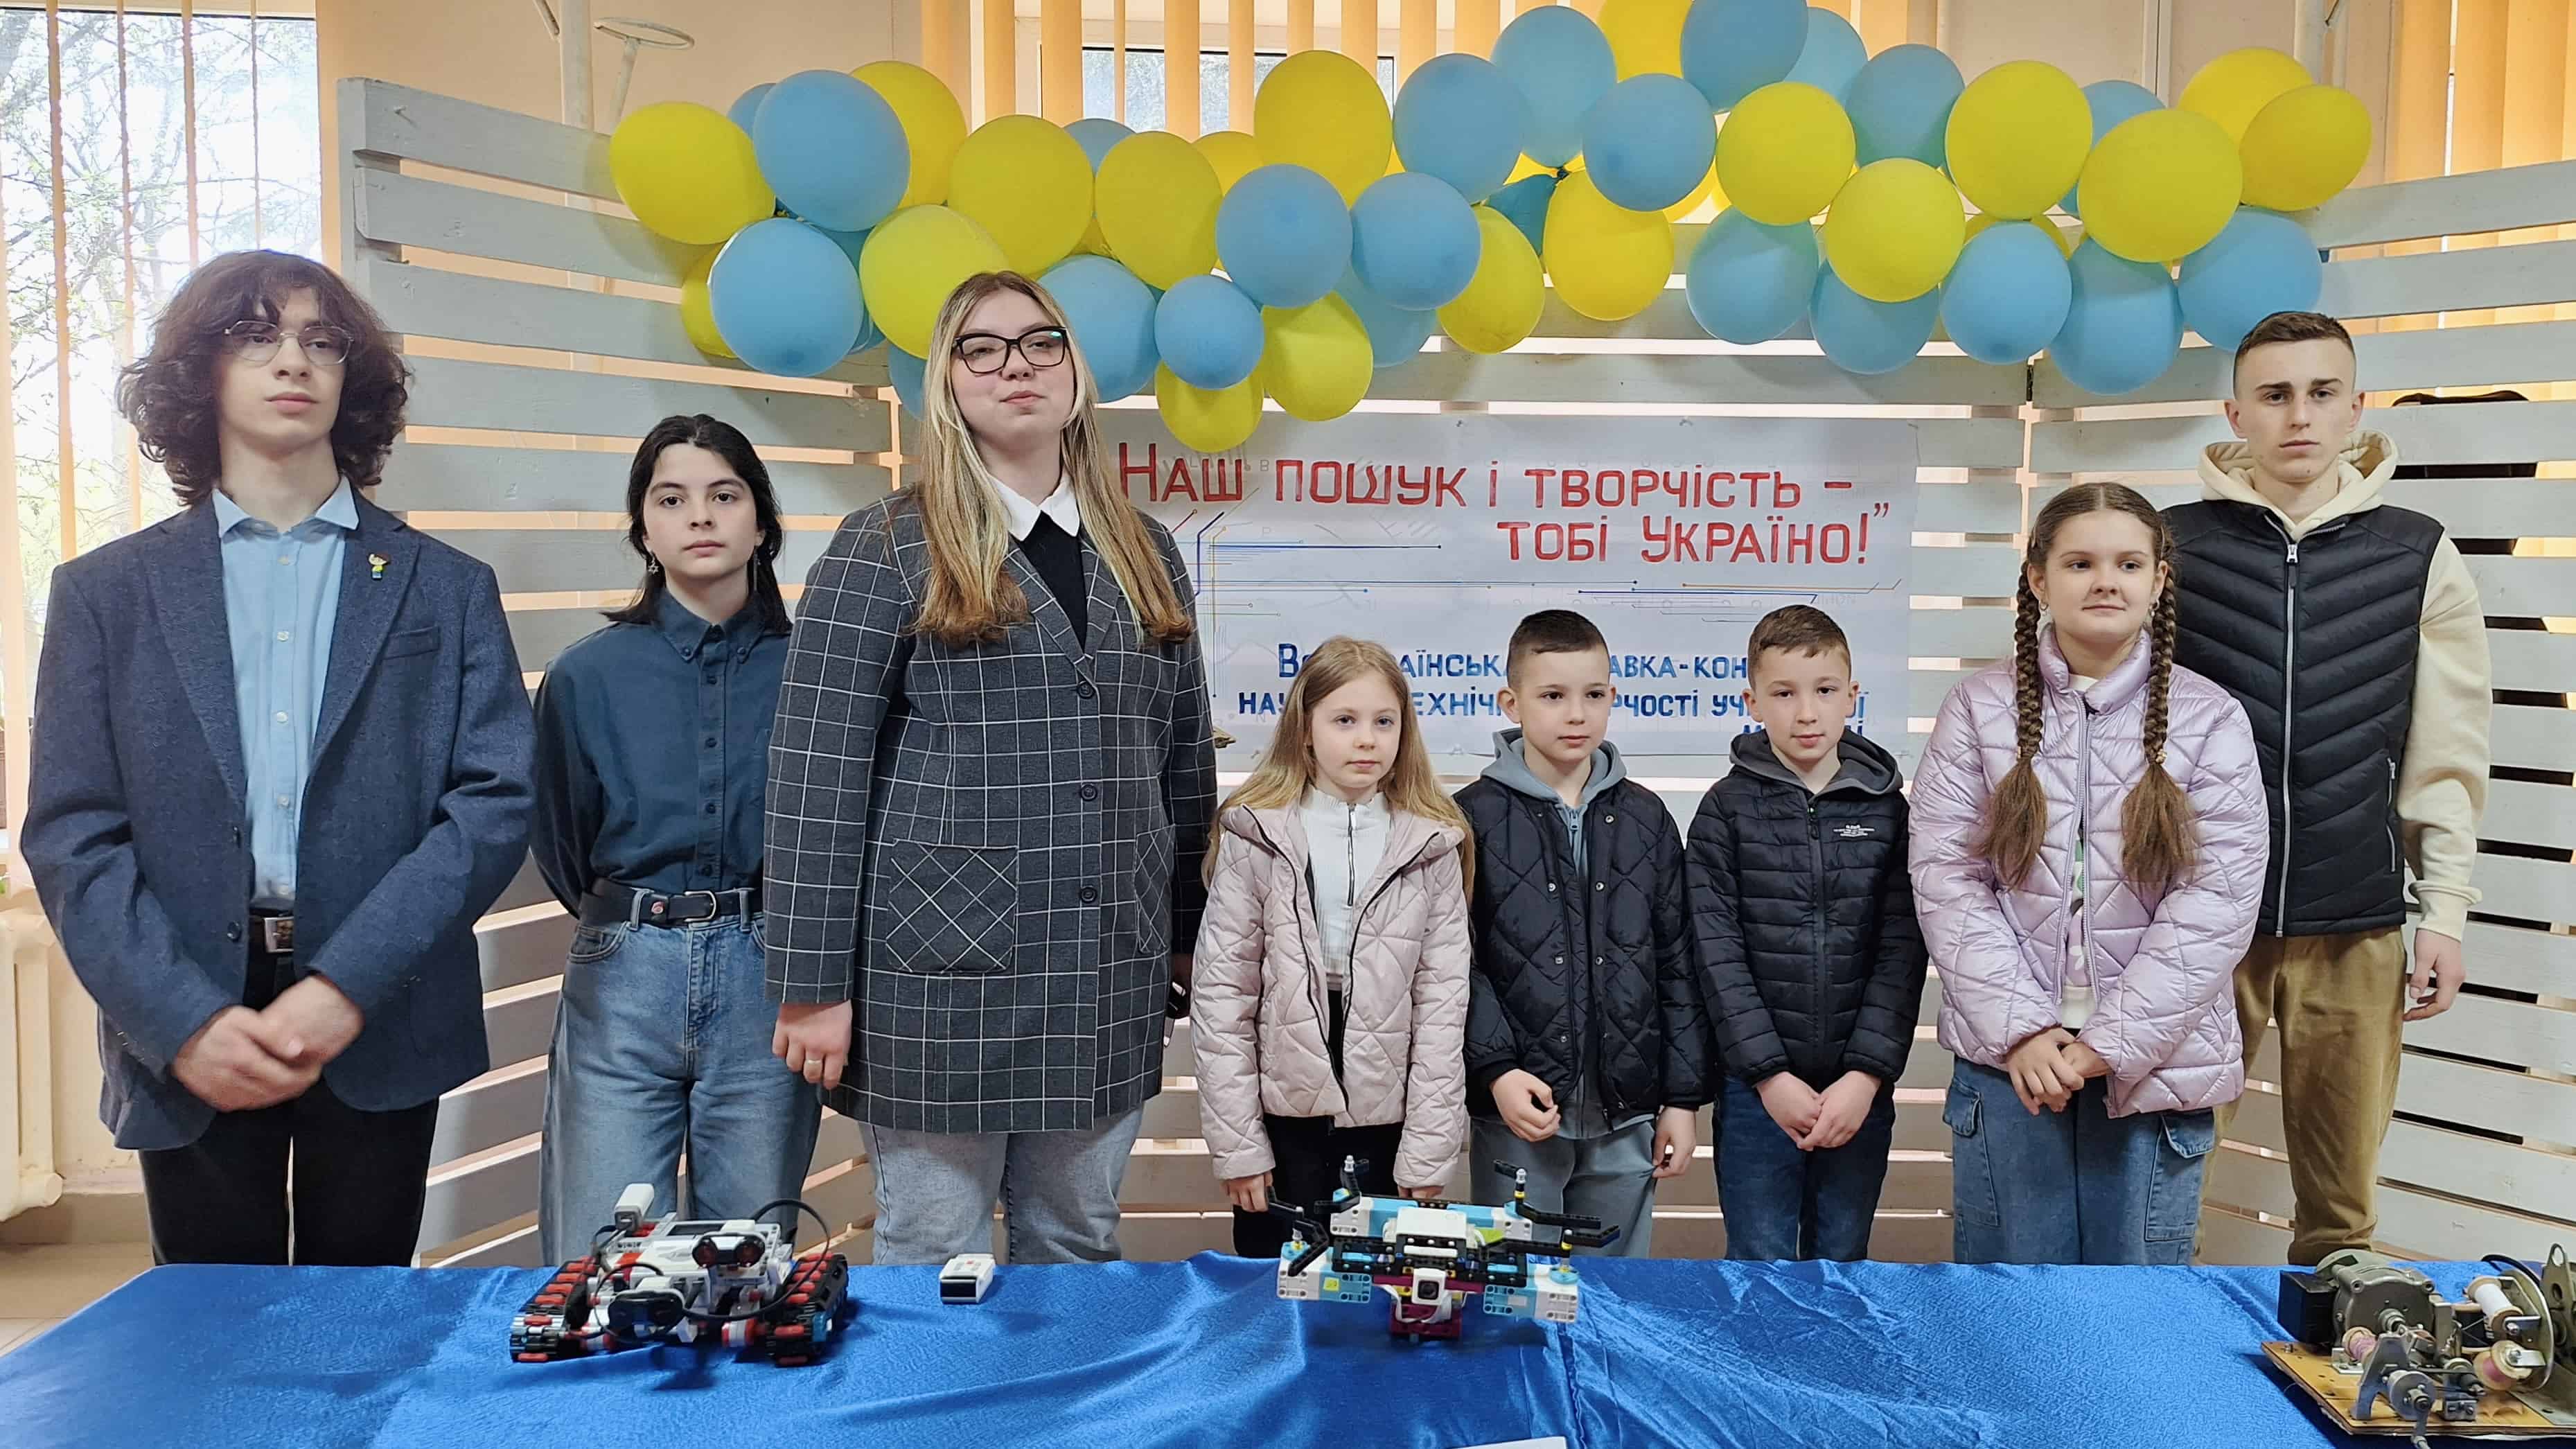 Відбувся міський етап Всеукраїнської виставки-конкурсу науково-технічної творчості учнівської молоді «Наш пошук і творчість - тобі, Україно!»